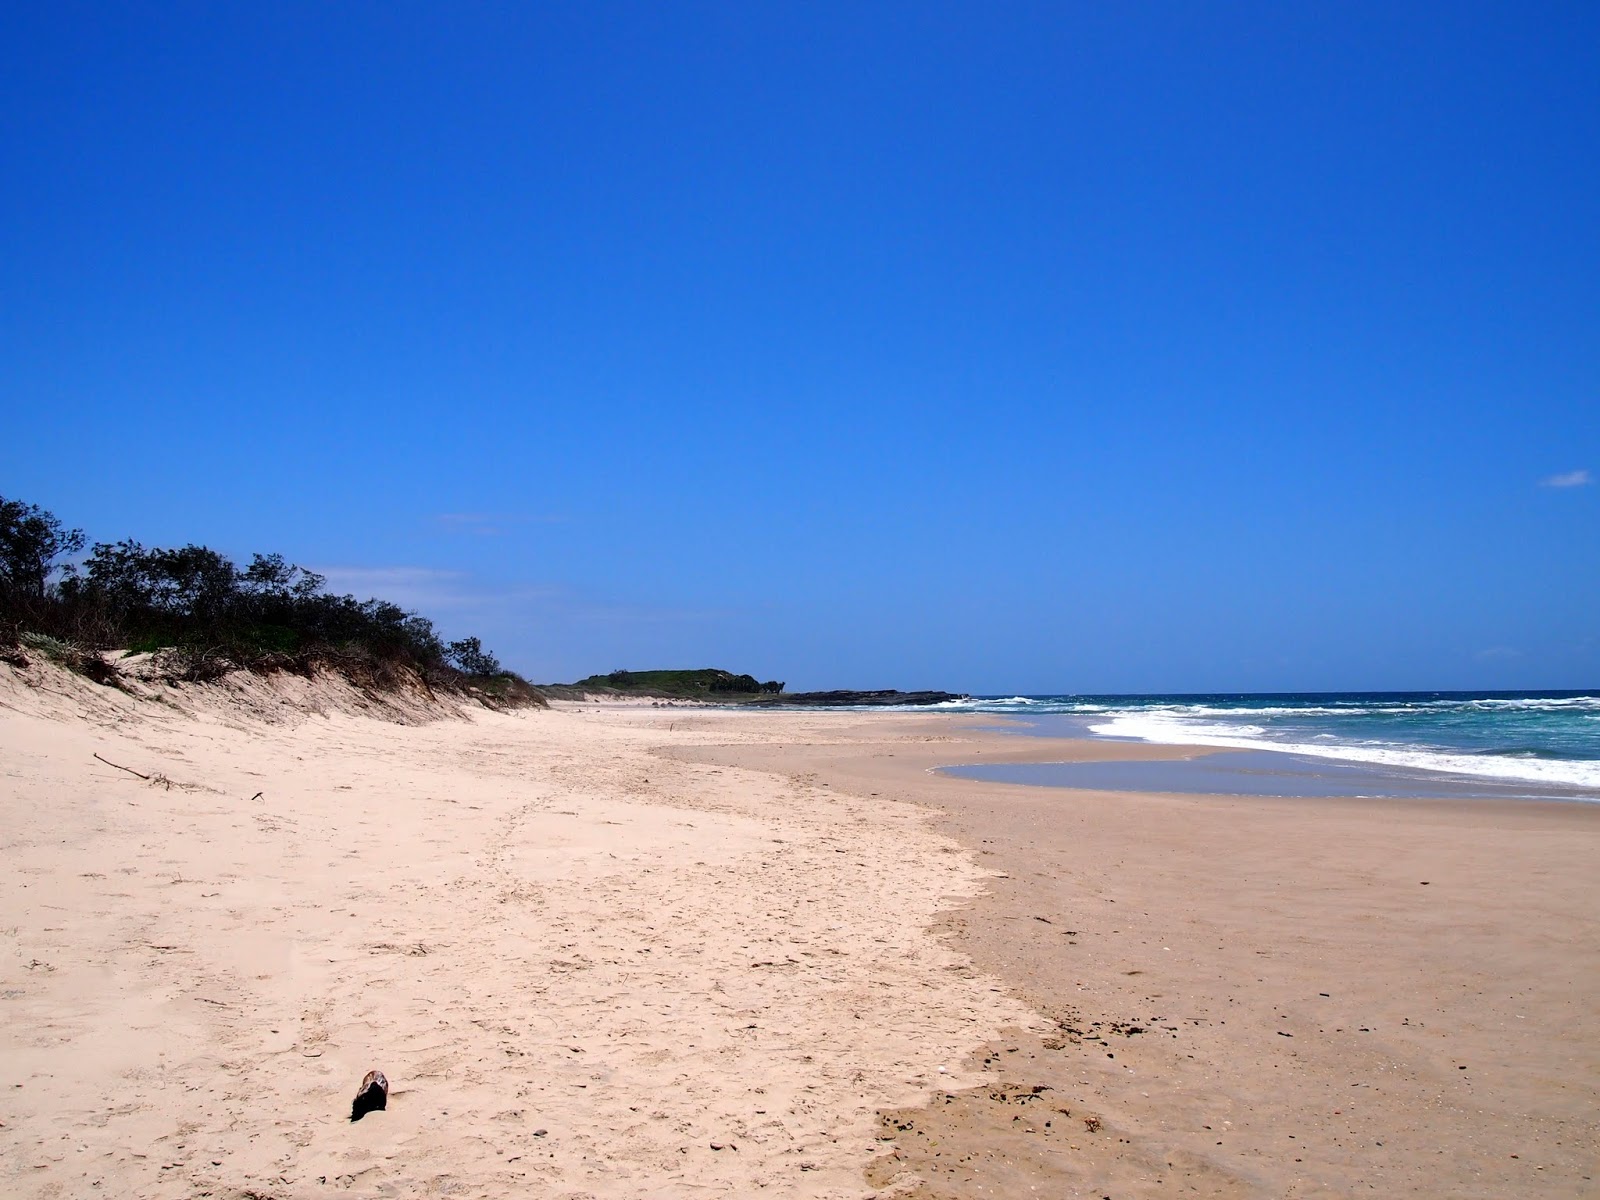 Foto di Bluff Beach ubicato in zona naturale